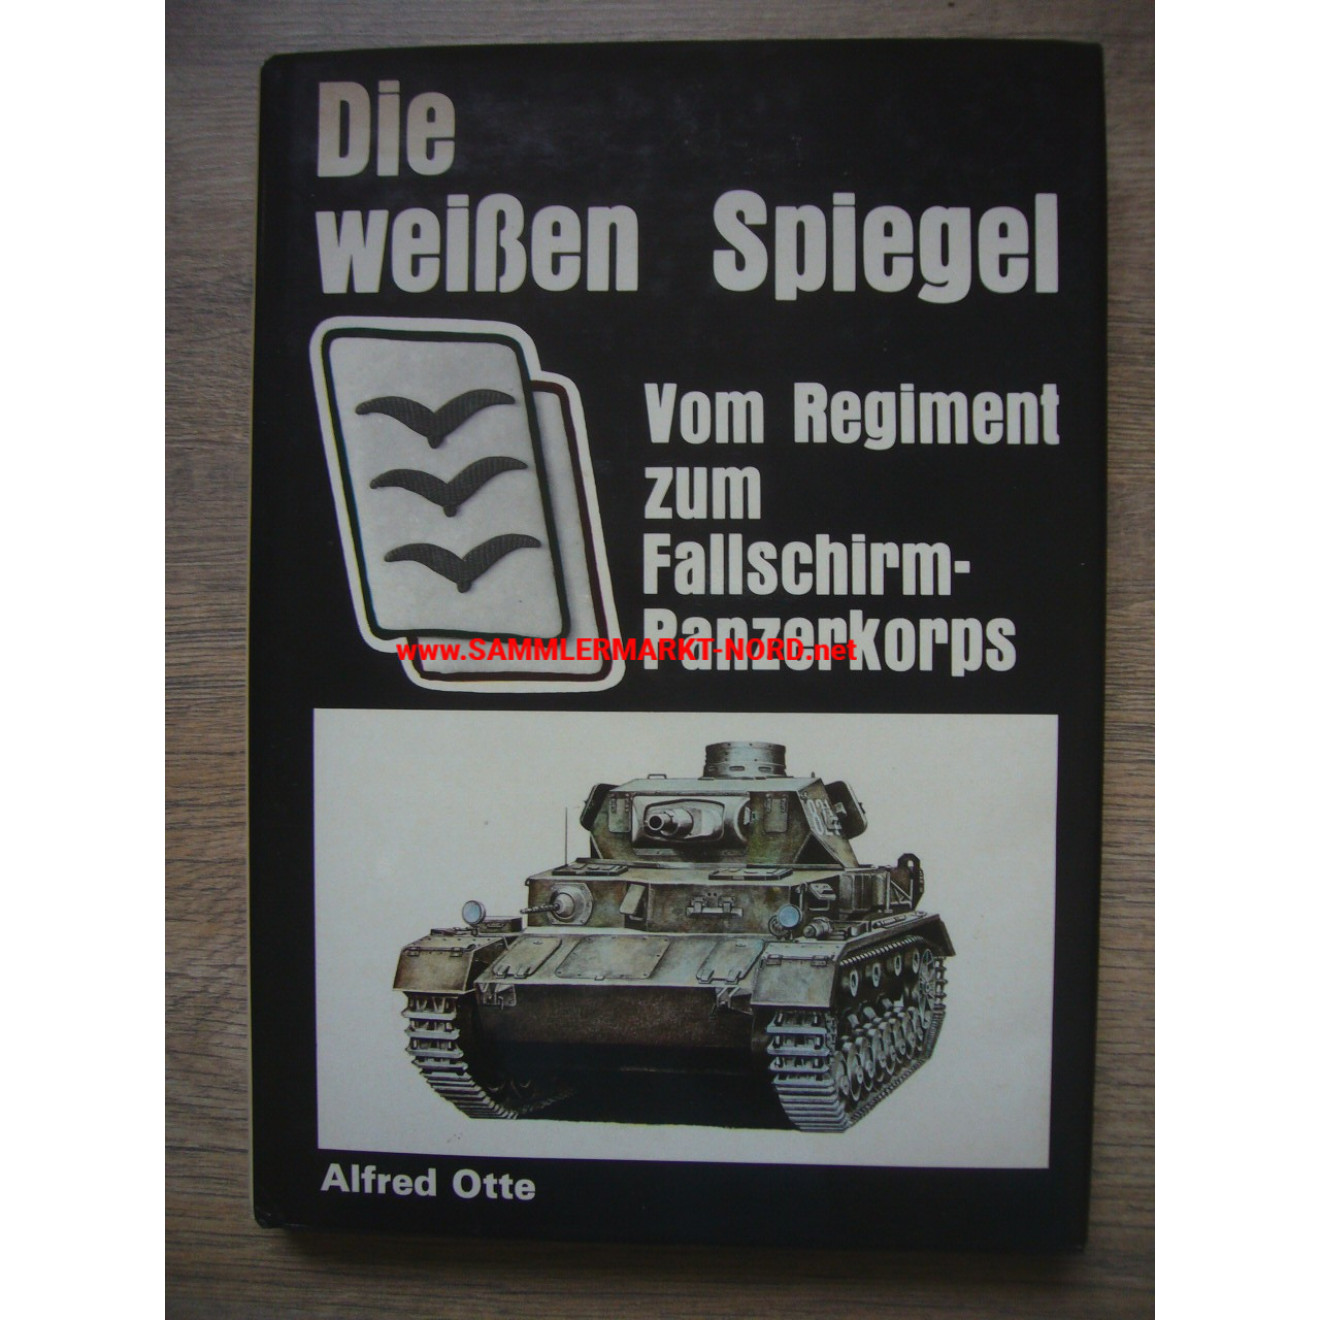 Die weißen Spiegel - Vom Regiment zum Fallschirm-Panzerkorps (HG)